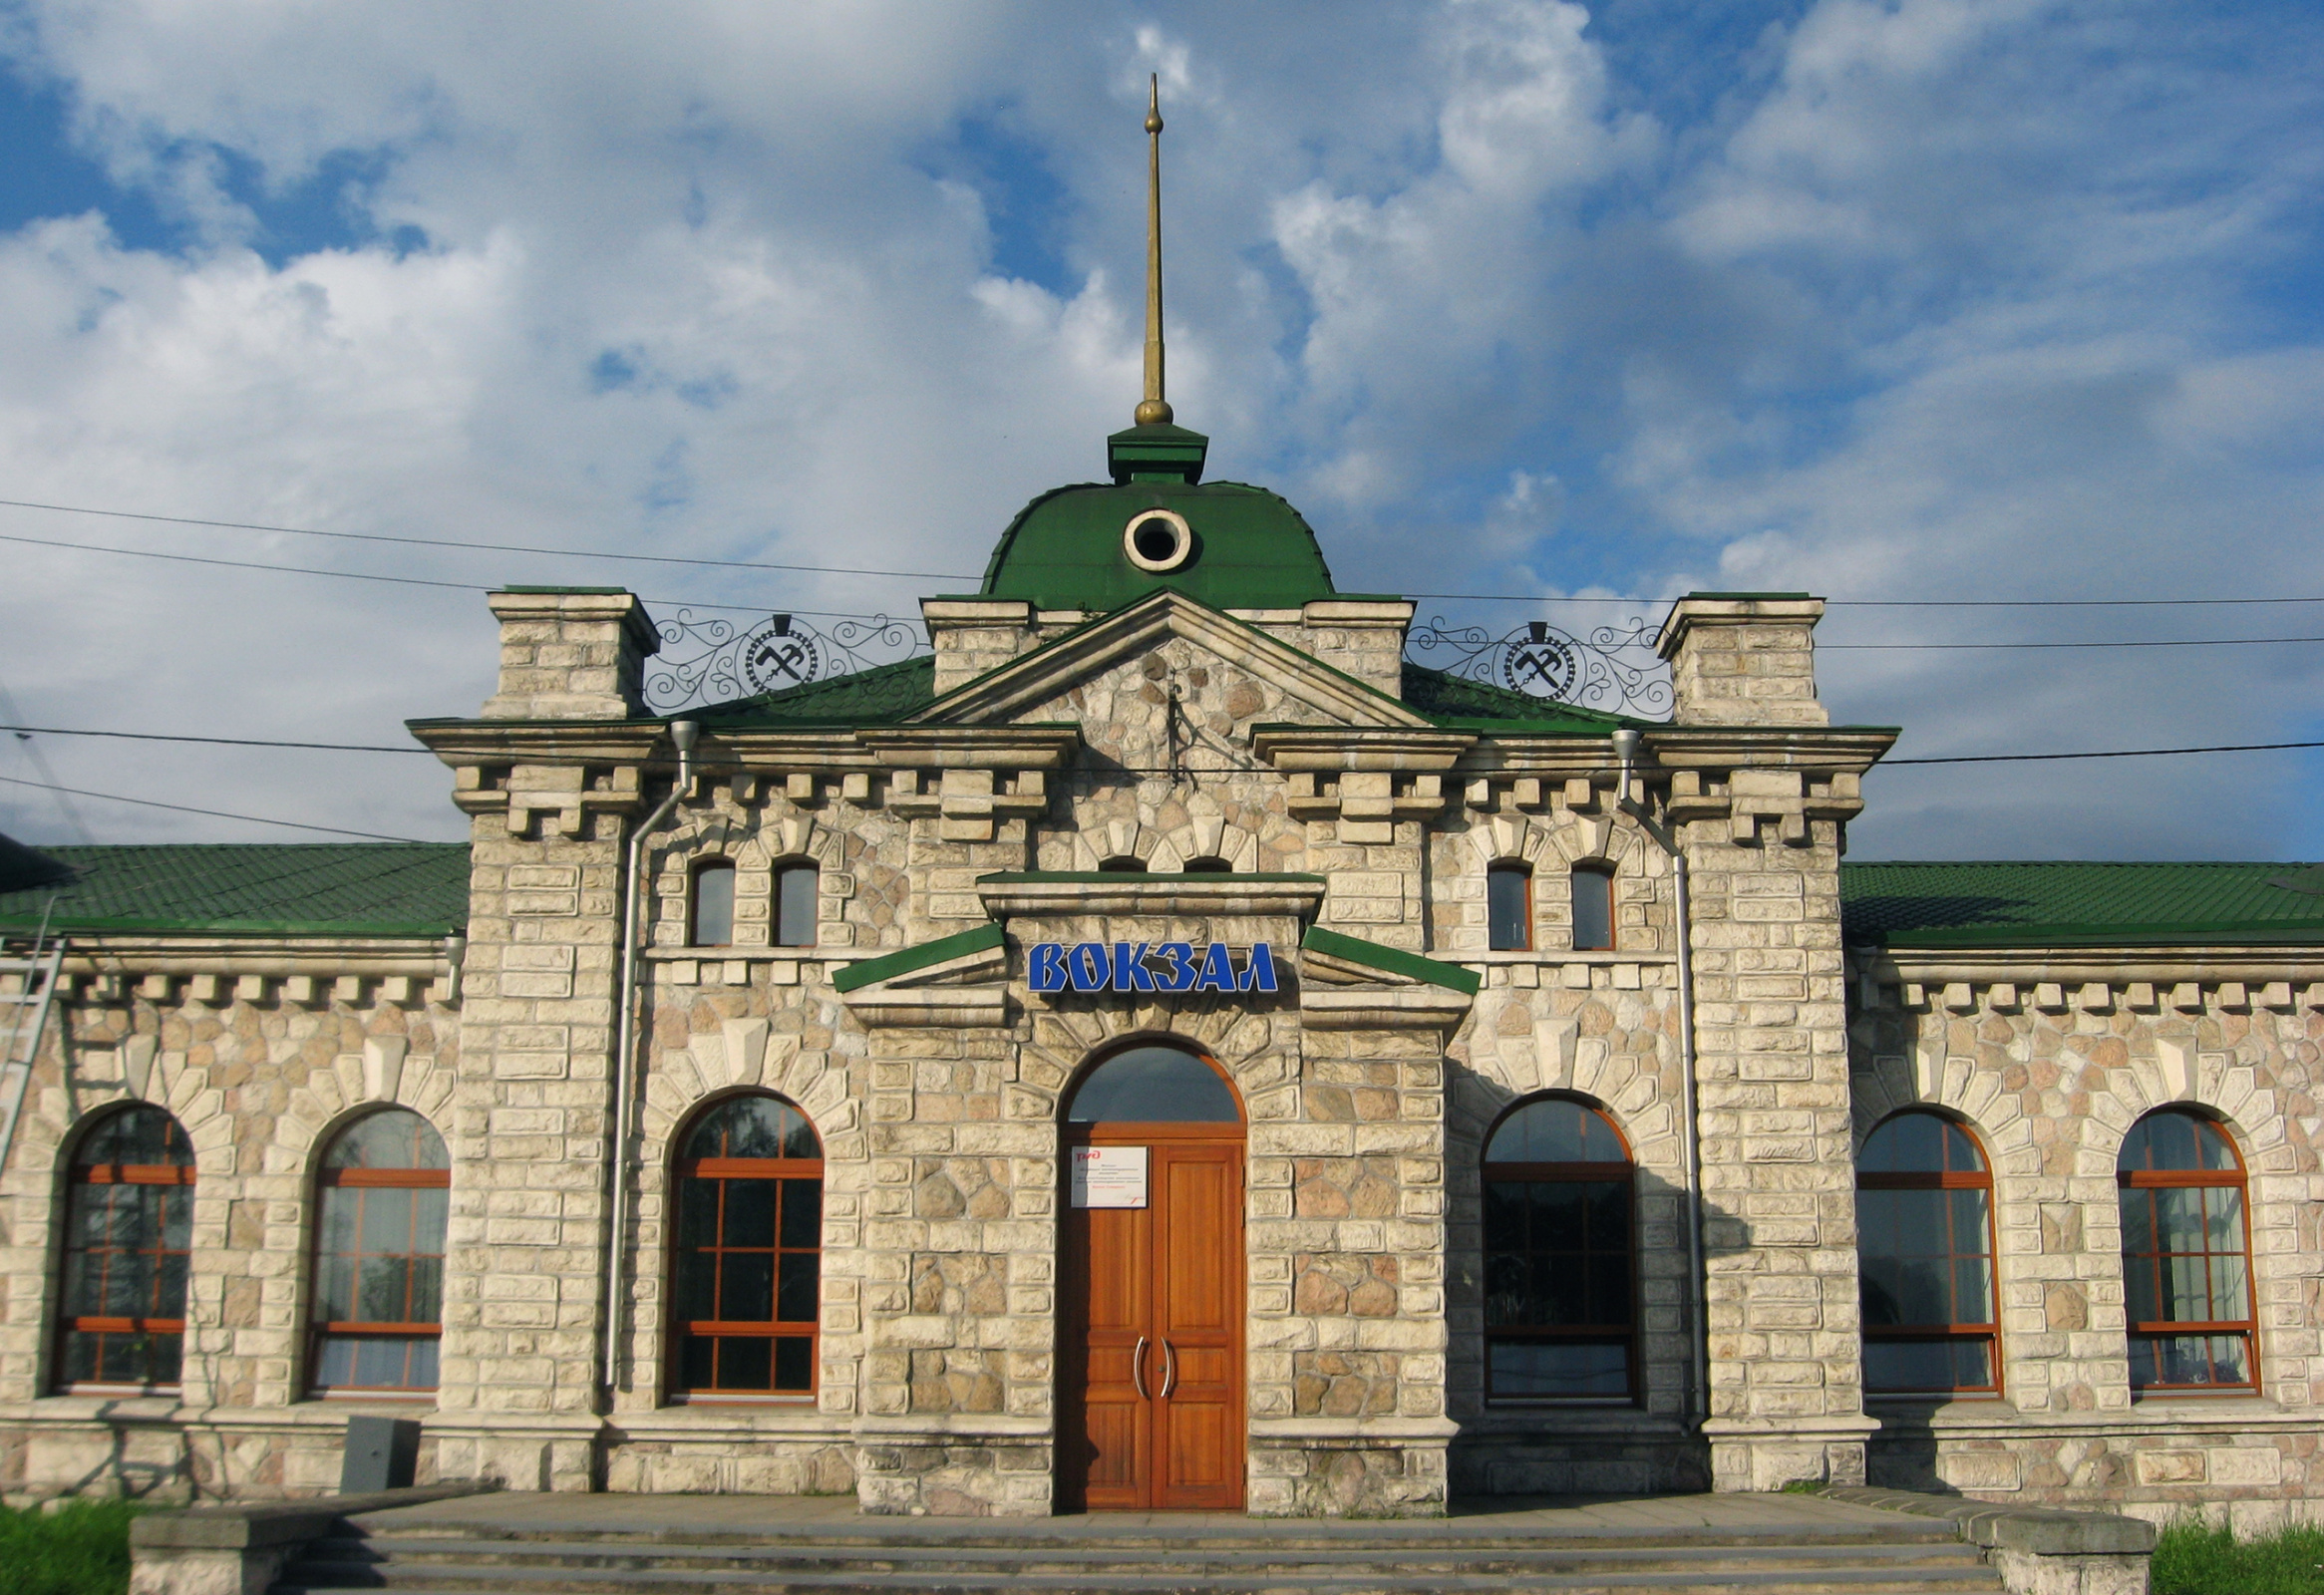 Вокзал в городе Слюдянка. Фото: Ирина Портола, участник конкурса РГО 